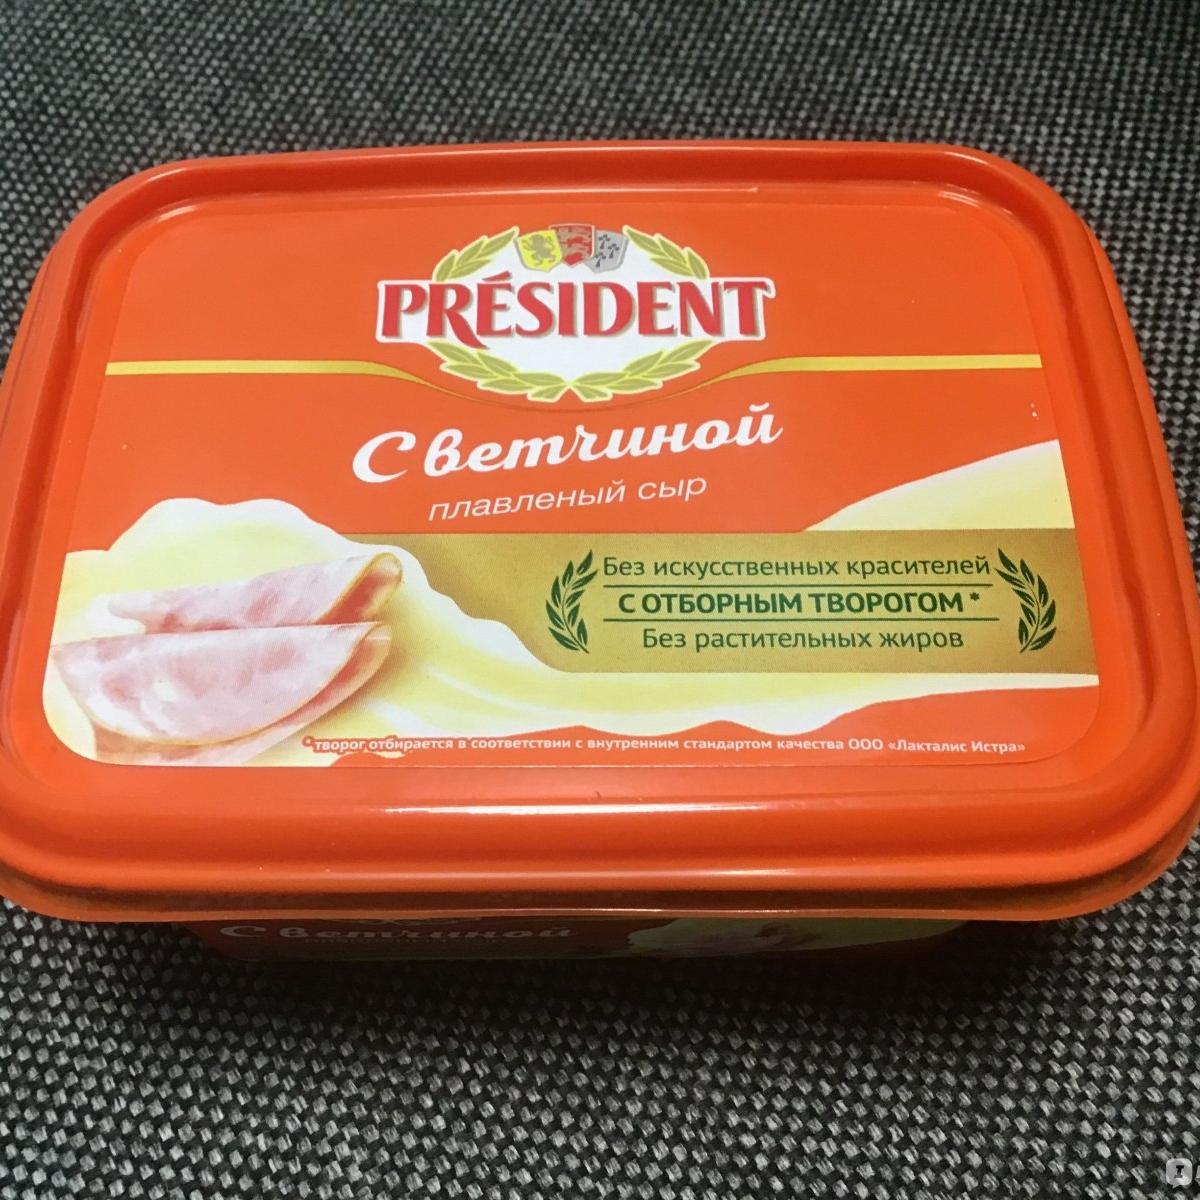 Фото - Сыр плавленый с ветчиной President Президент